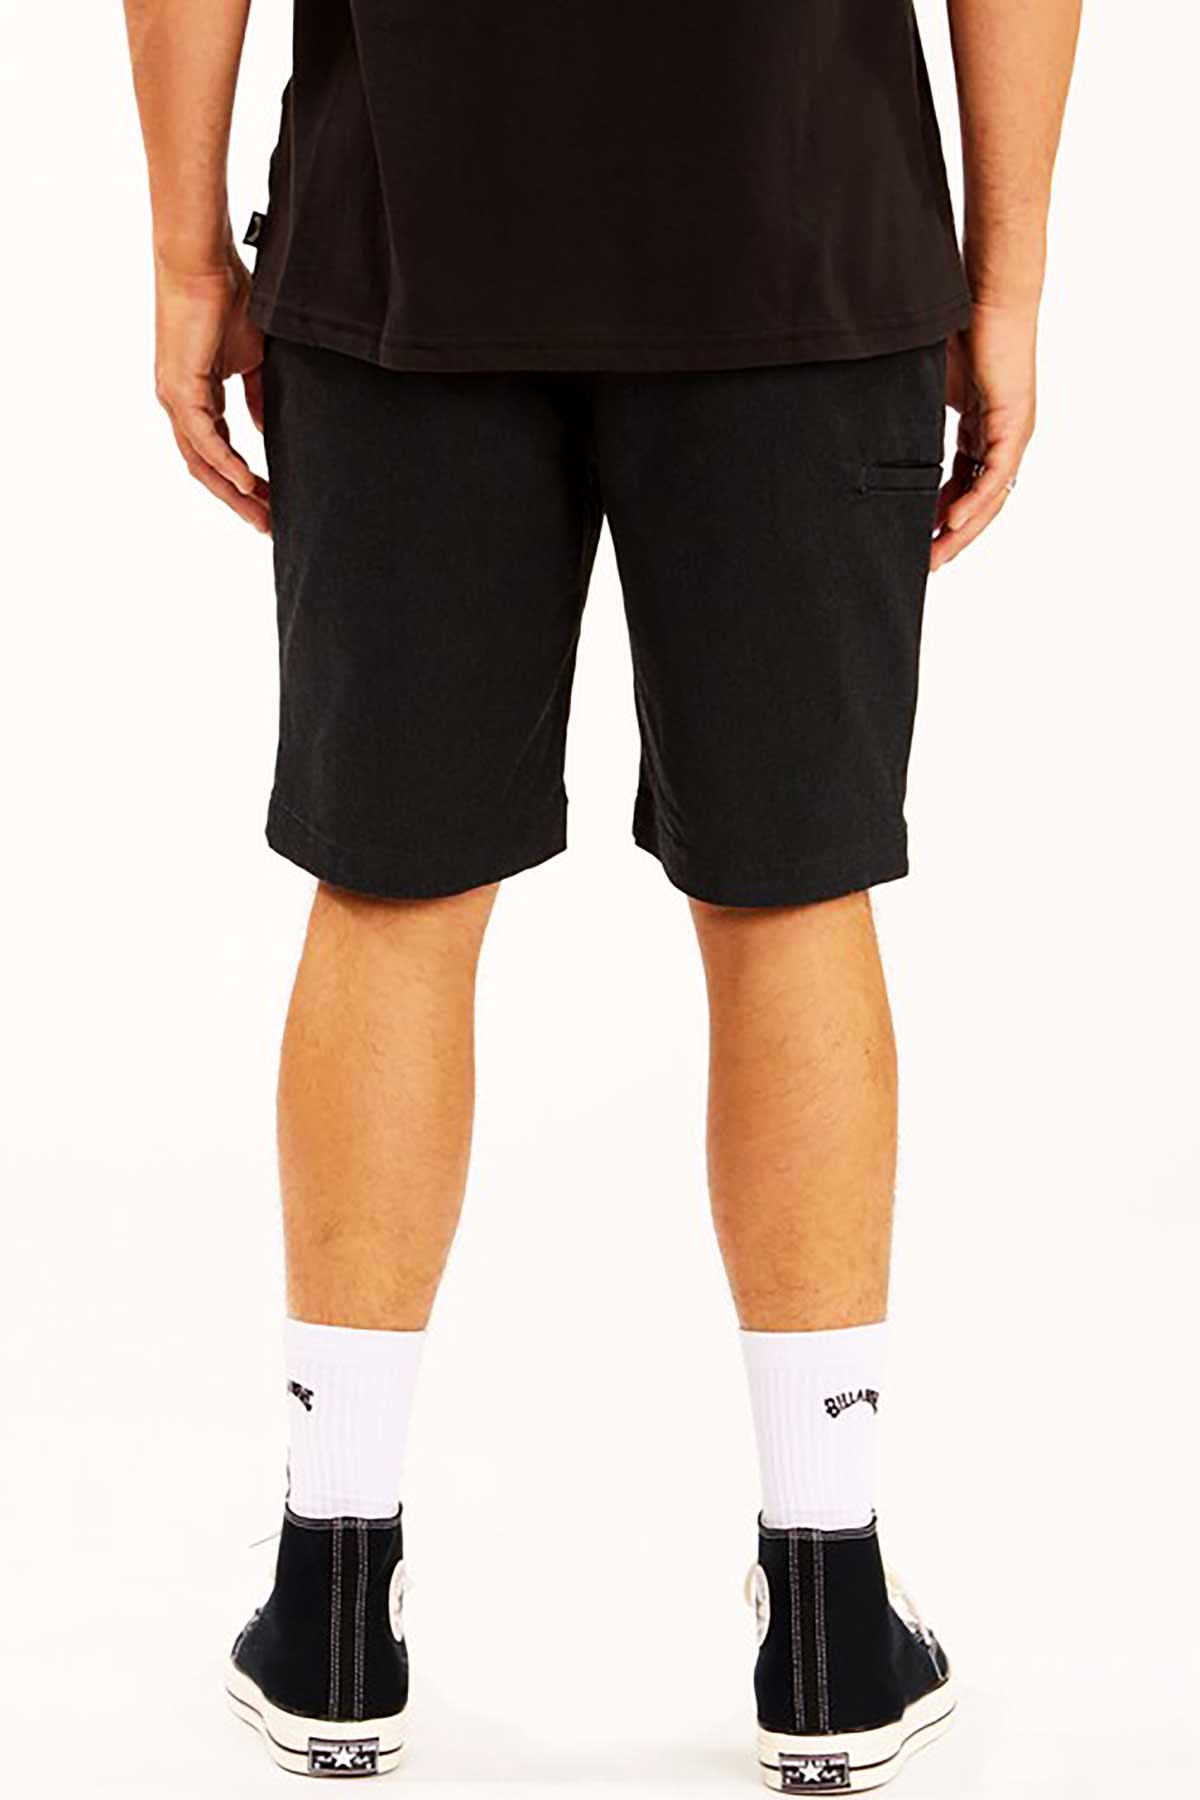 Billabong mens shorts - back pockets